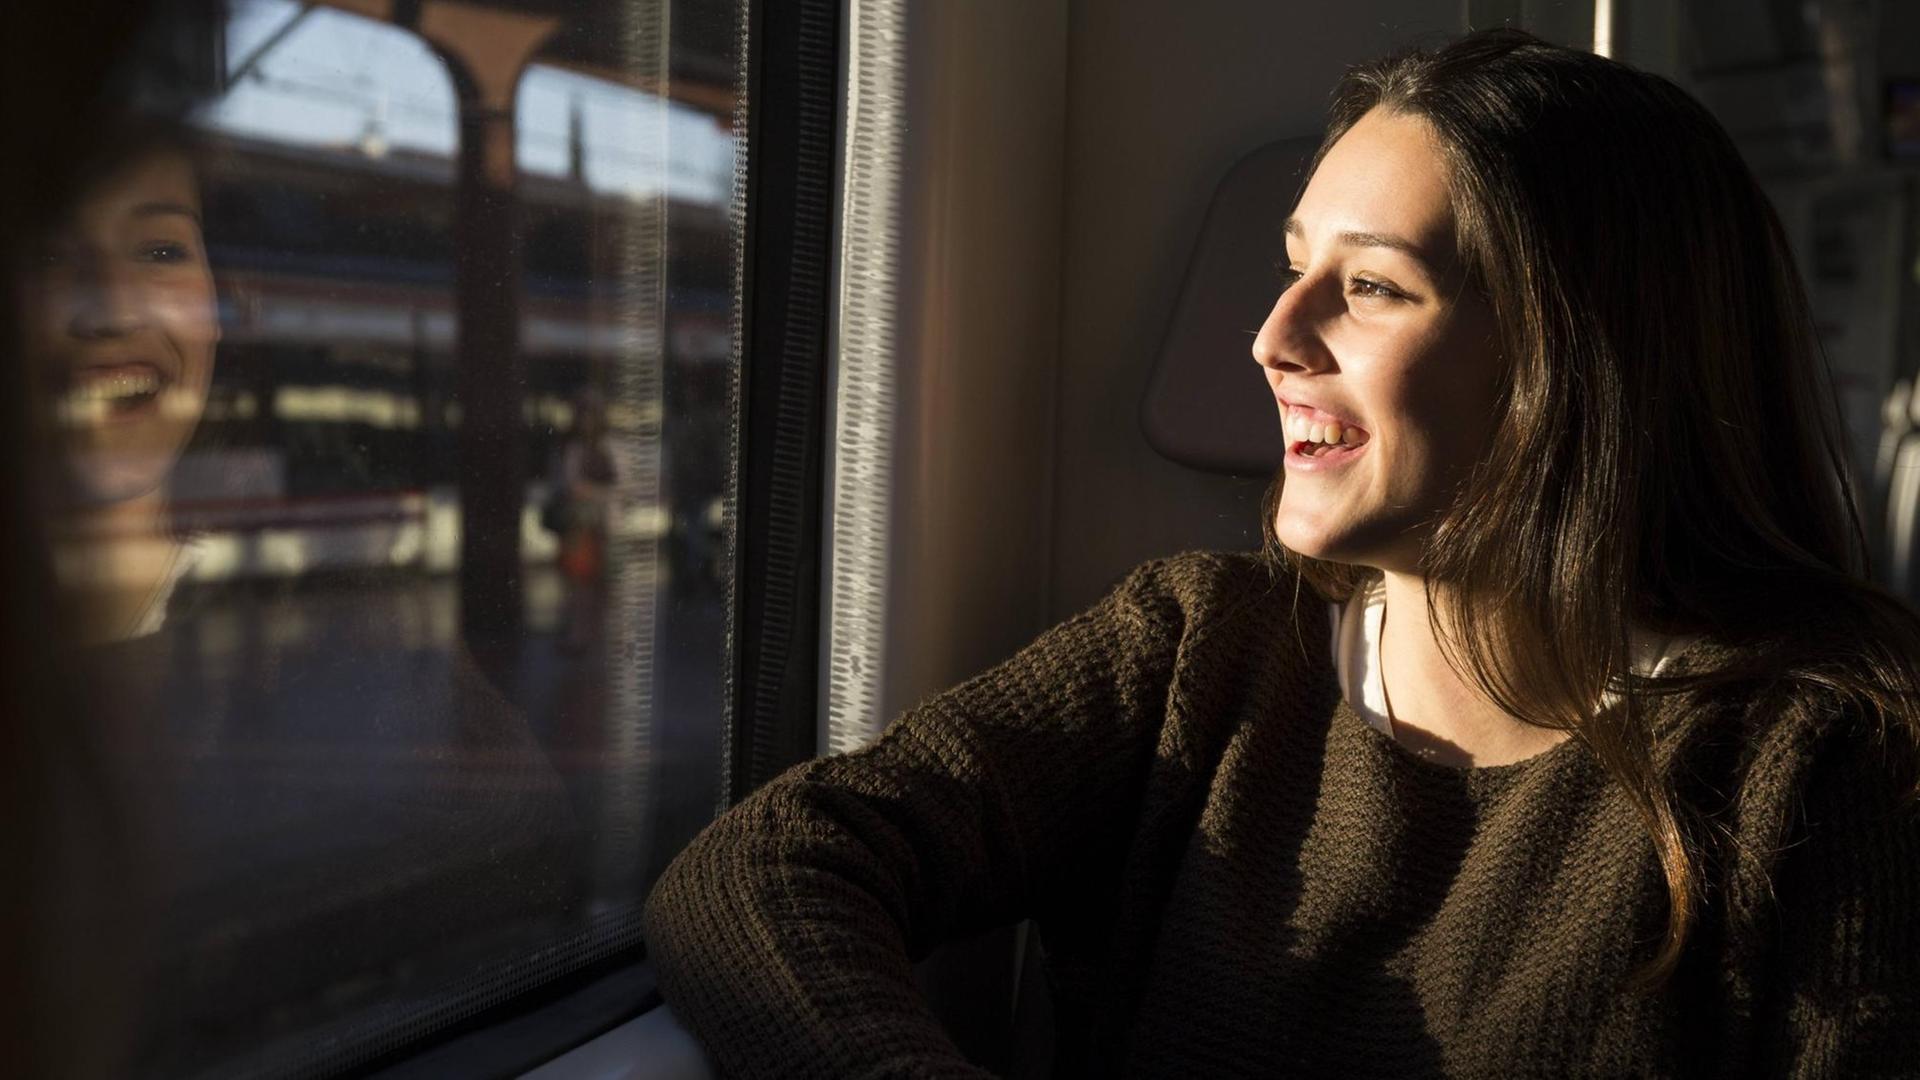 Eine fröhliche junge Frau sitzt in einem Zug und schaut aus dem Fenster auf den vorbeiziehenden Bahnhof. In der Scheibe spiegelt sich ihr lachendes Gesicht.